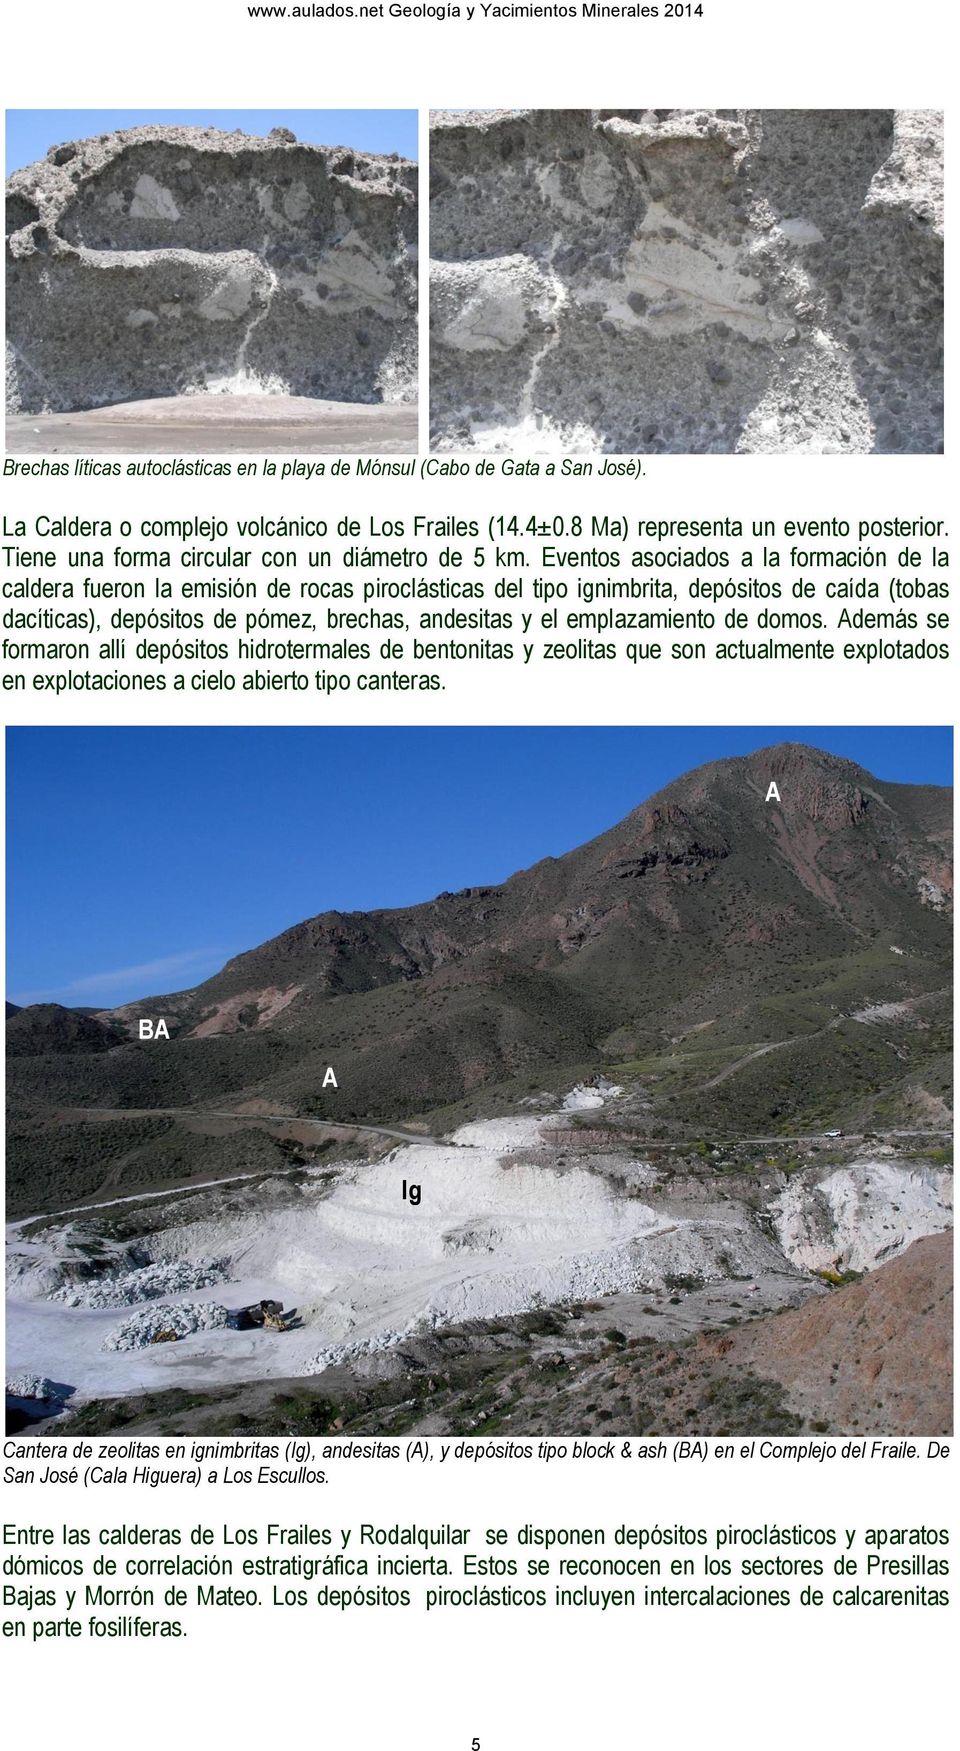 Eventos asociados a la formación de la caldera fueron la emisión de rocas piroclásticas del tipo ignimbrita, depósitos de caída (tobas dacíticas), depósitos de pómez, brechas, andesitas y el